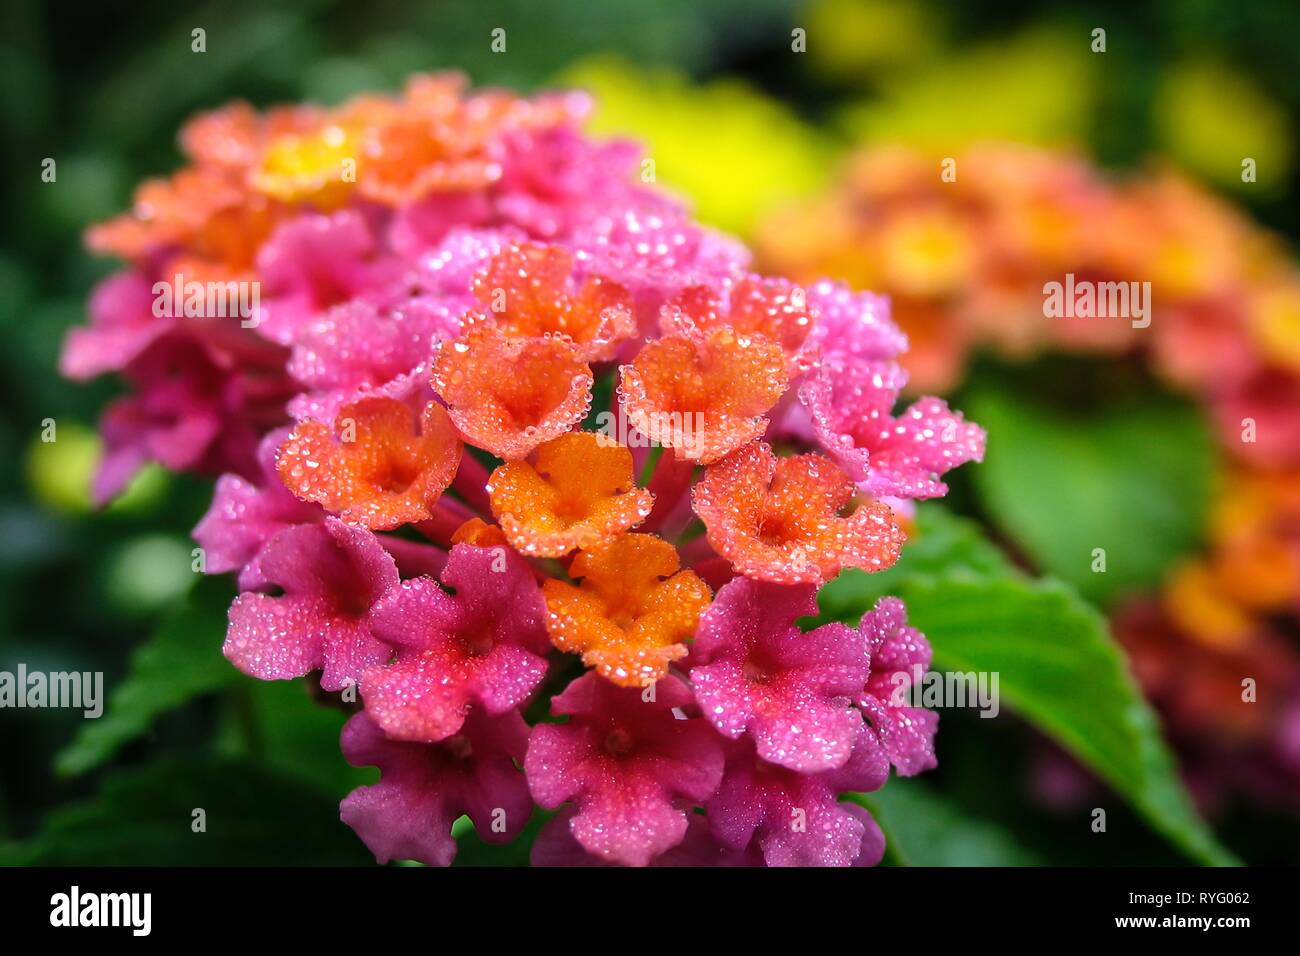 In der Nähe Bild von bunten Lantana Blume mit Morgentau bringen ein Gefühl der Neuheit. Makro zeigt Details selten beobachtet, aber sehr heilsame Wirkung. Stockfoto